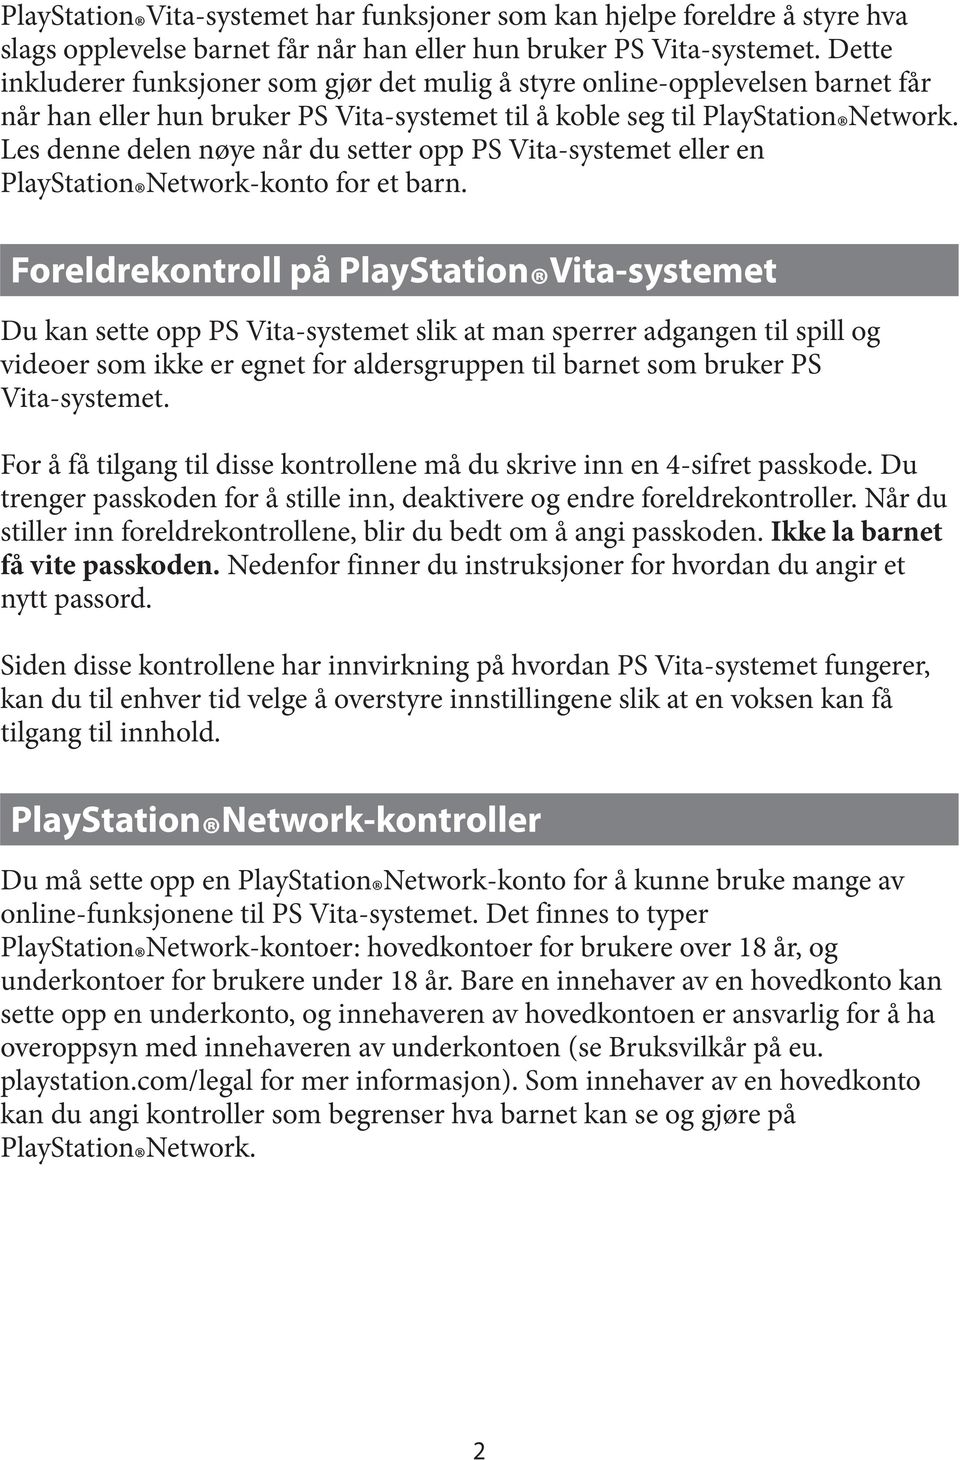 Foreldrekontroll på Vita-systemet Du kan sette opp PS Vita-systemet slik at man sperrer adgangen til spill og videoer som ikke er egnet for aldersgruppen til barnet som bruker PS For å få tilgang til